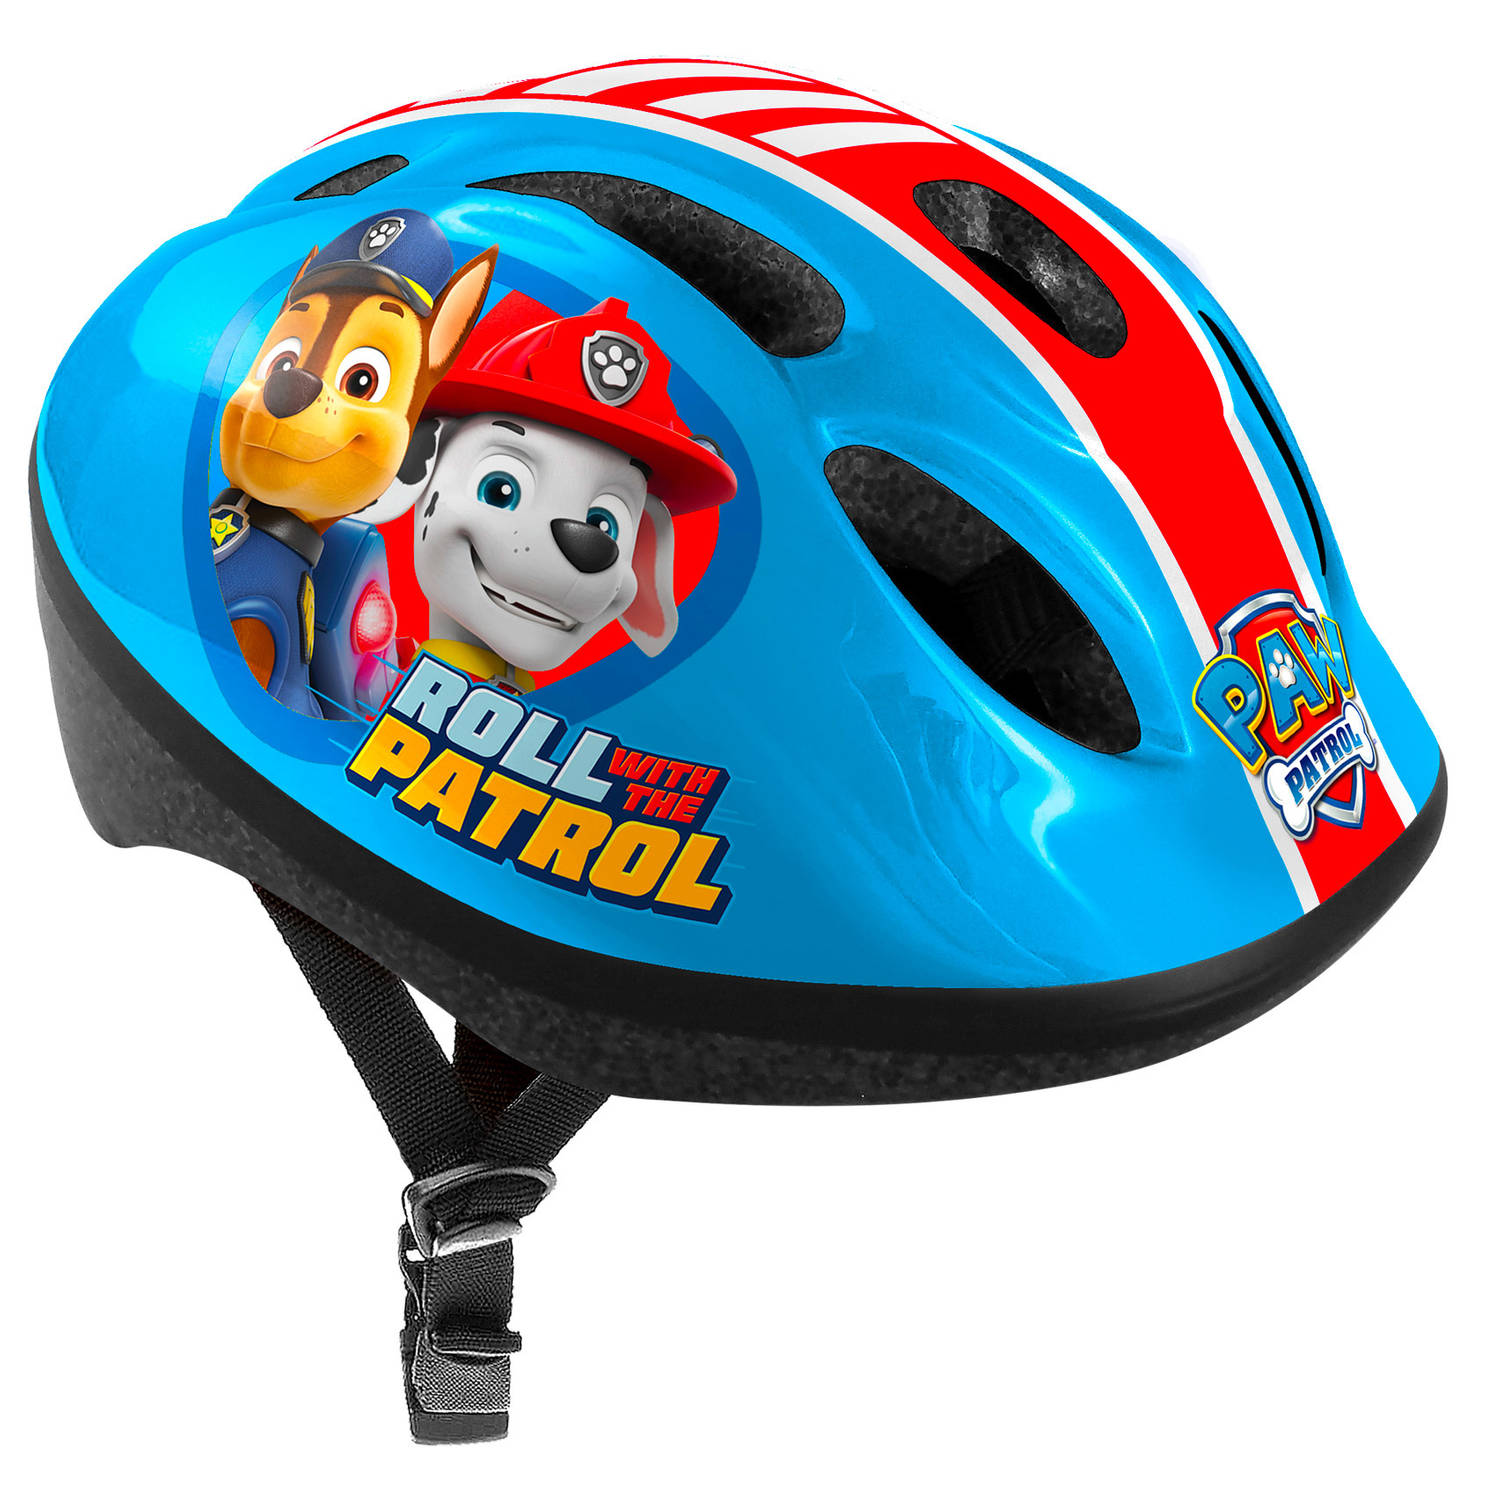 Nickelodeon Paw Patrol fietshelm verstelbaar 50-56 cm blauw/rood